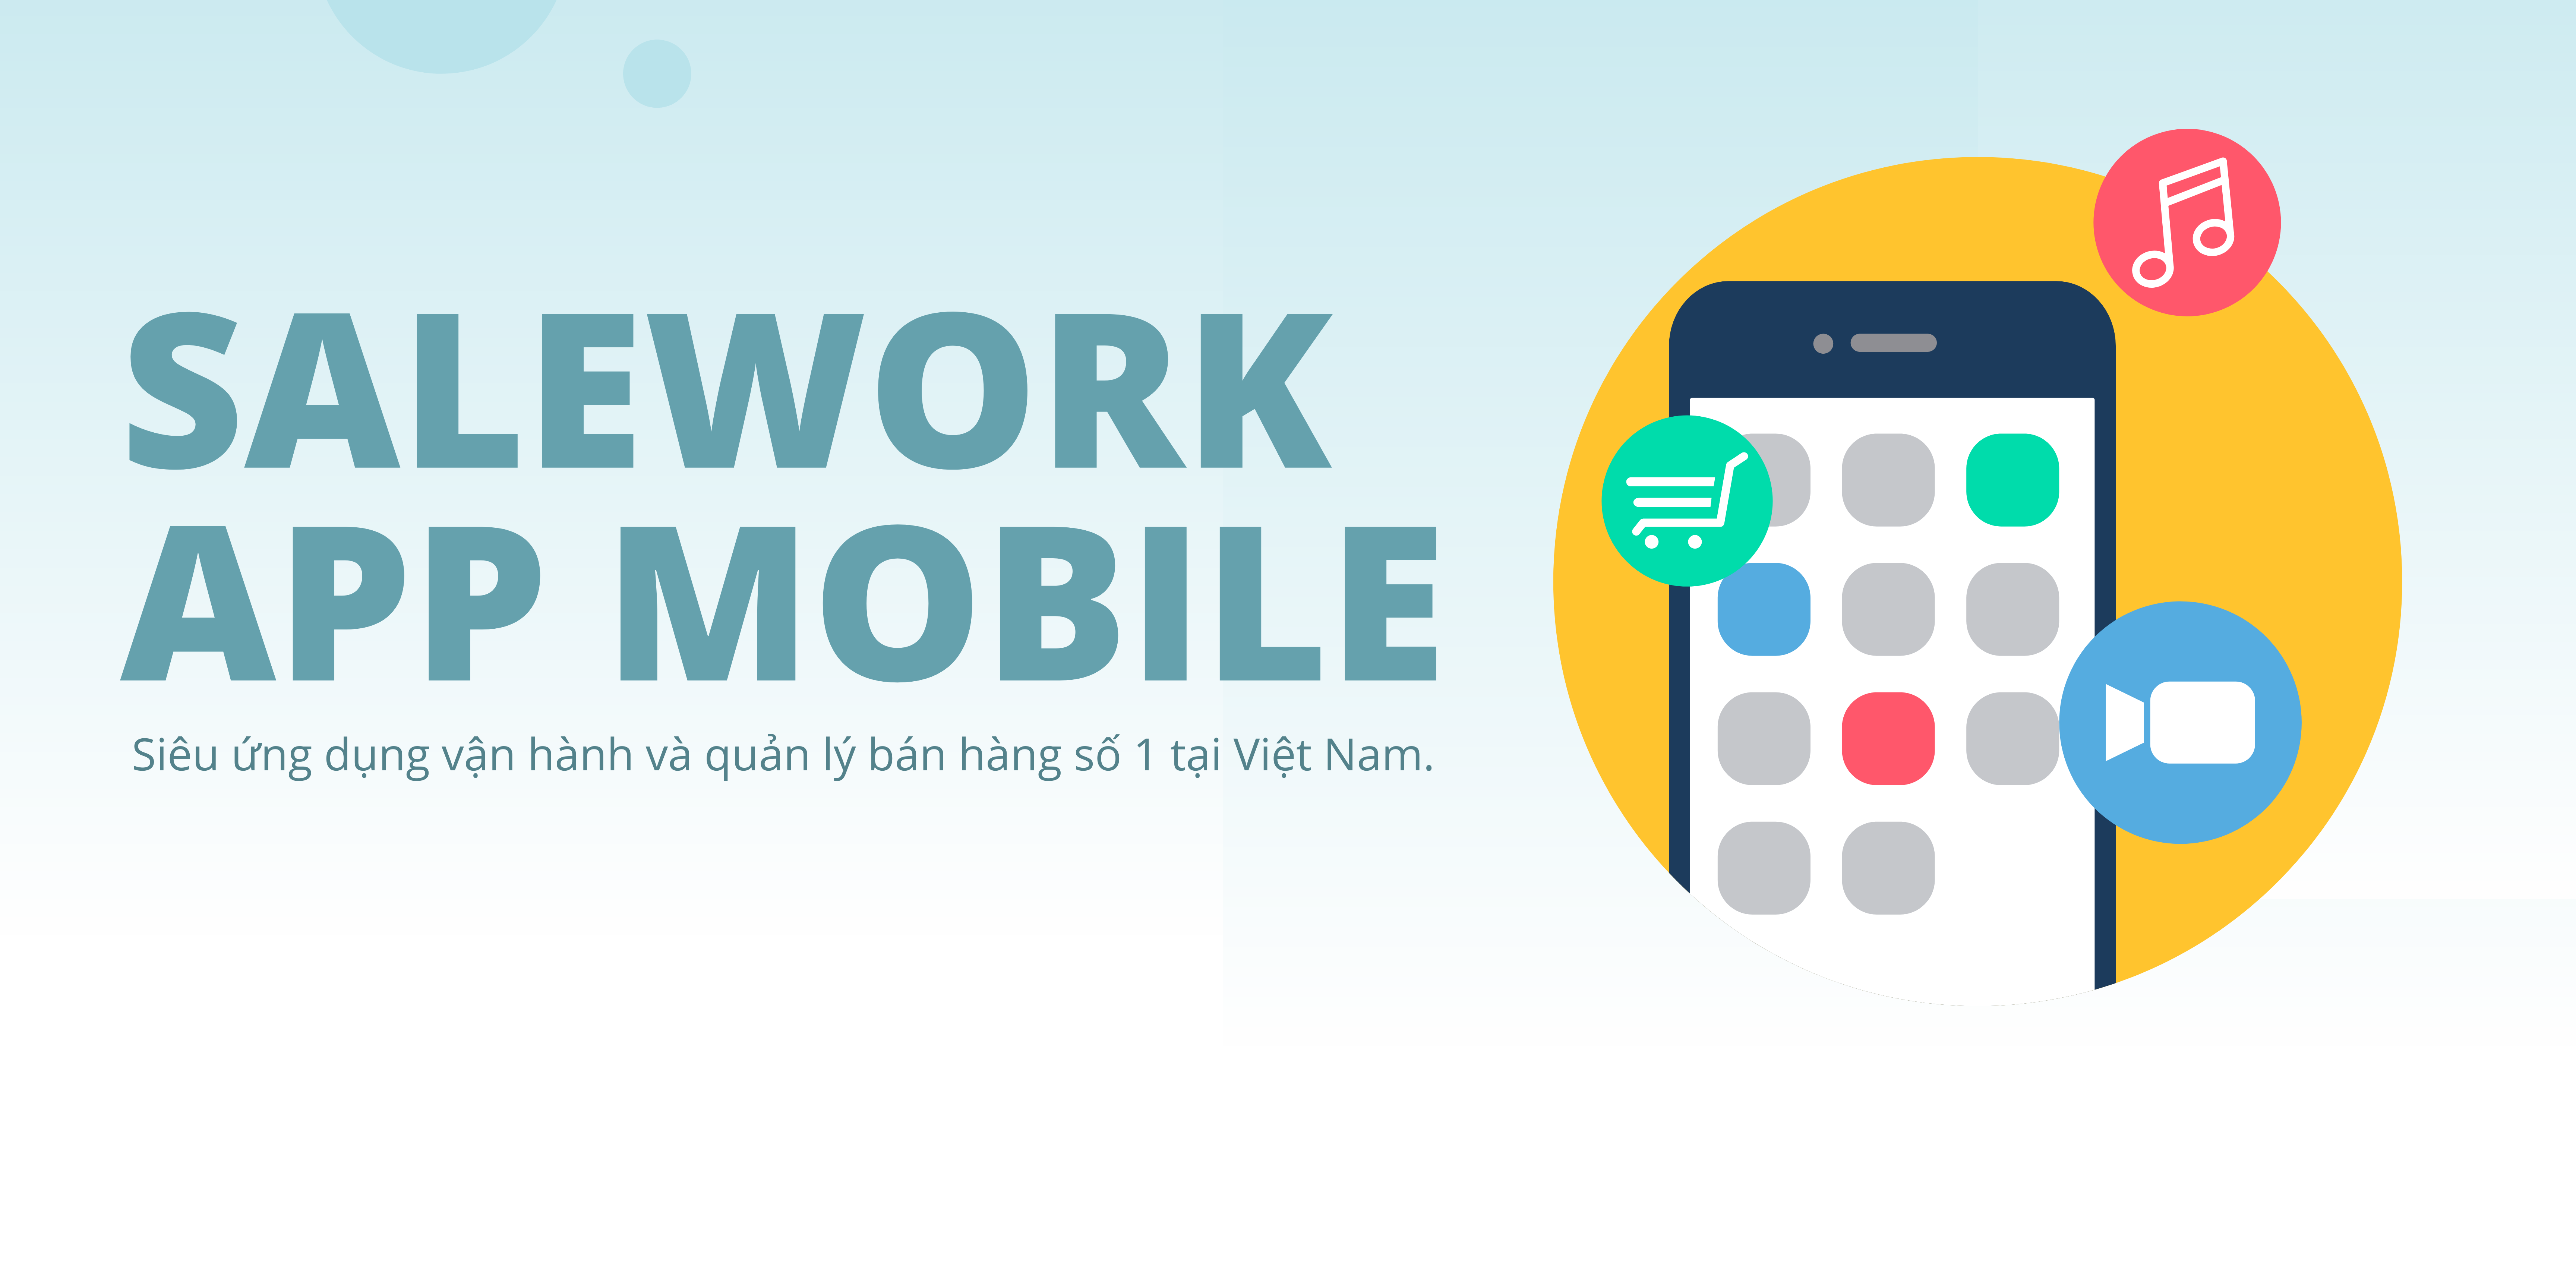 Salework app - Ứng dụng quản lý bán hàng đa kênh trên điện thoại tốt nhất tại Việt Nam - 25